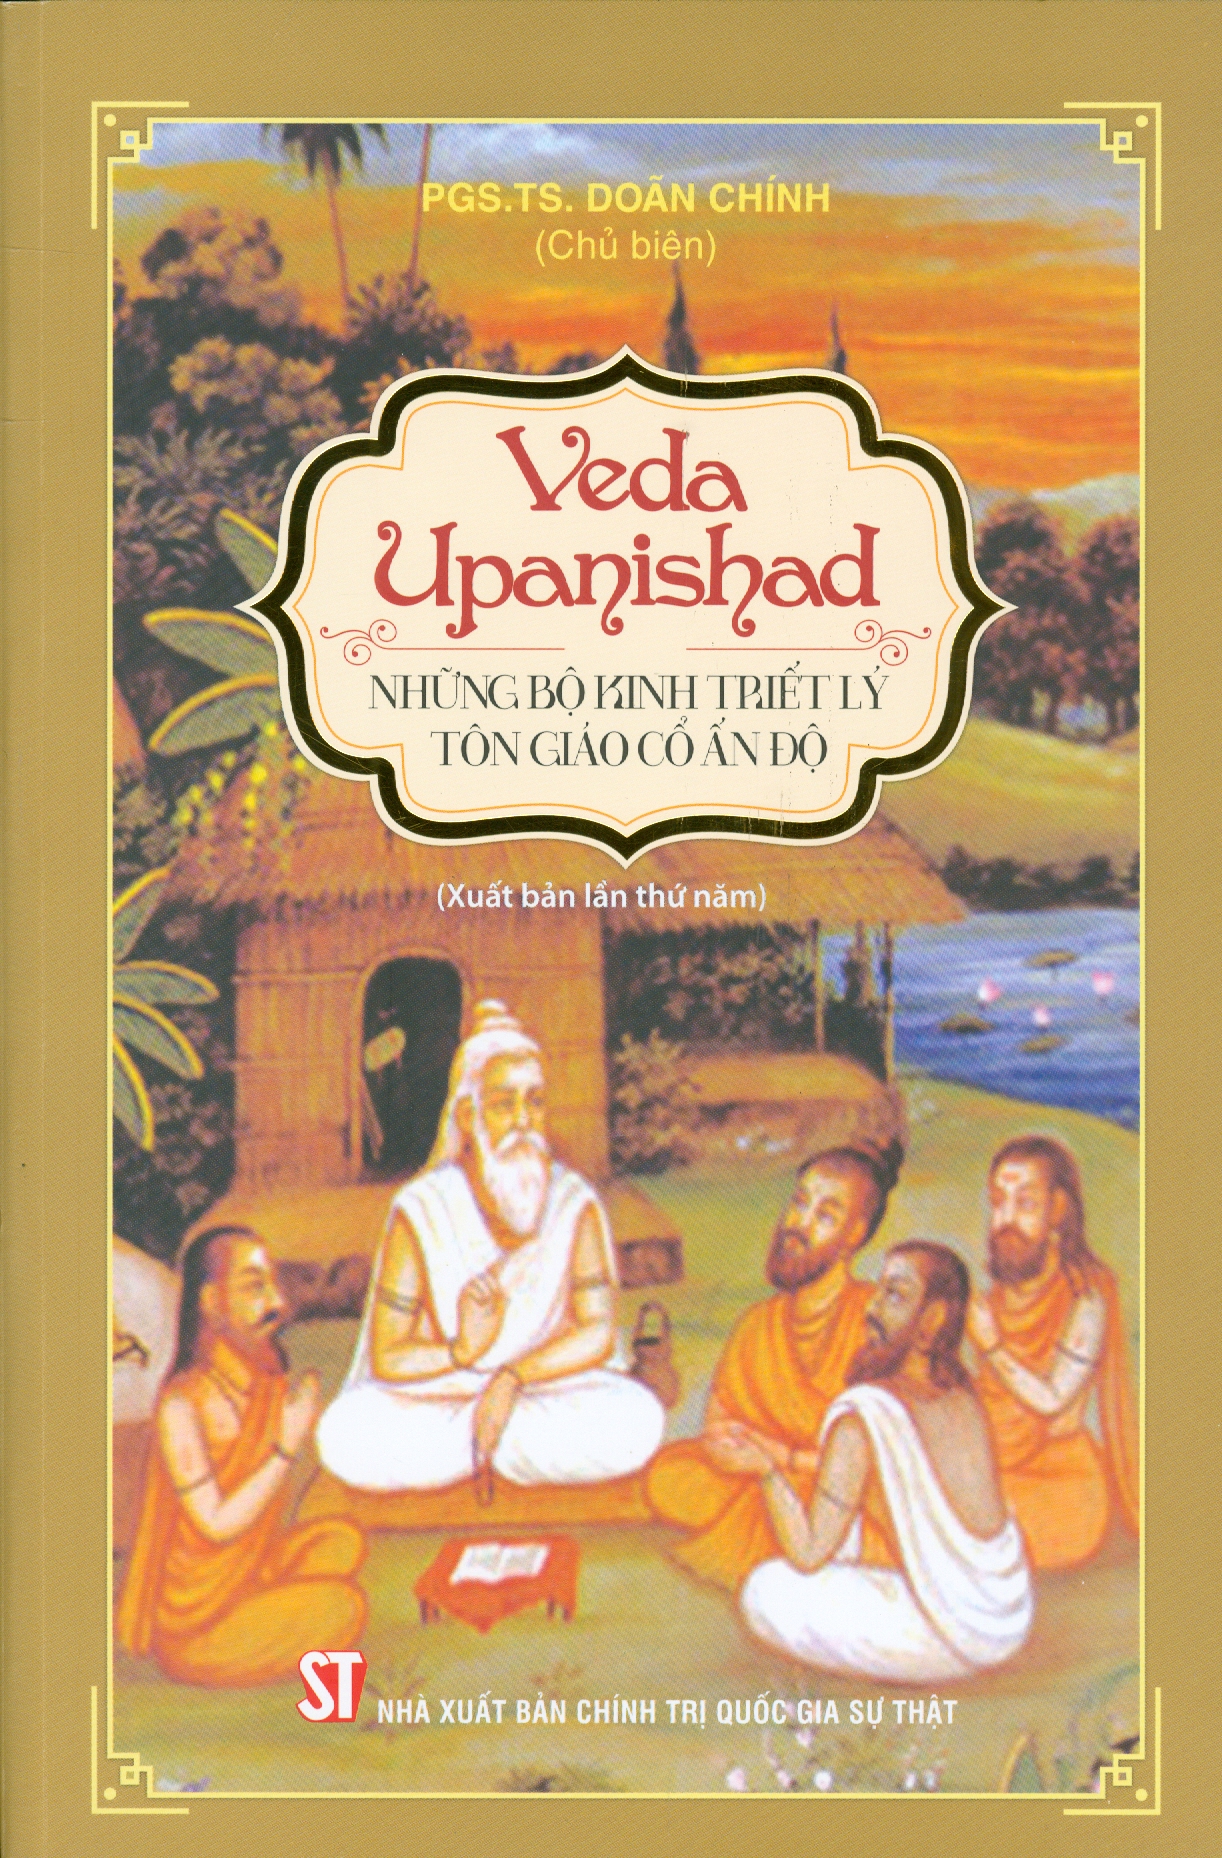 VEDA UPANISHAD - Những Bộ Kinh Triết Lý Tôn Giáo Cổ Ấn Độ (Xuất bản lần thứ năm)